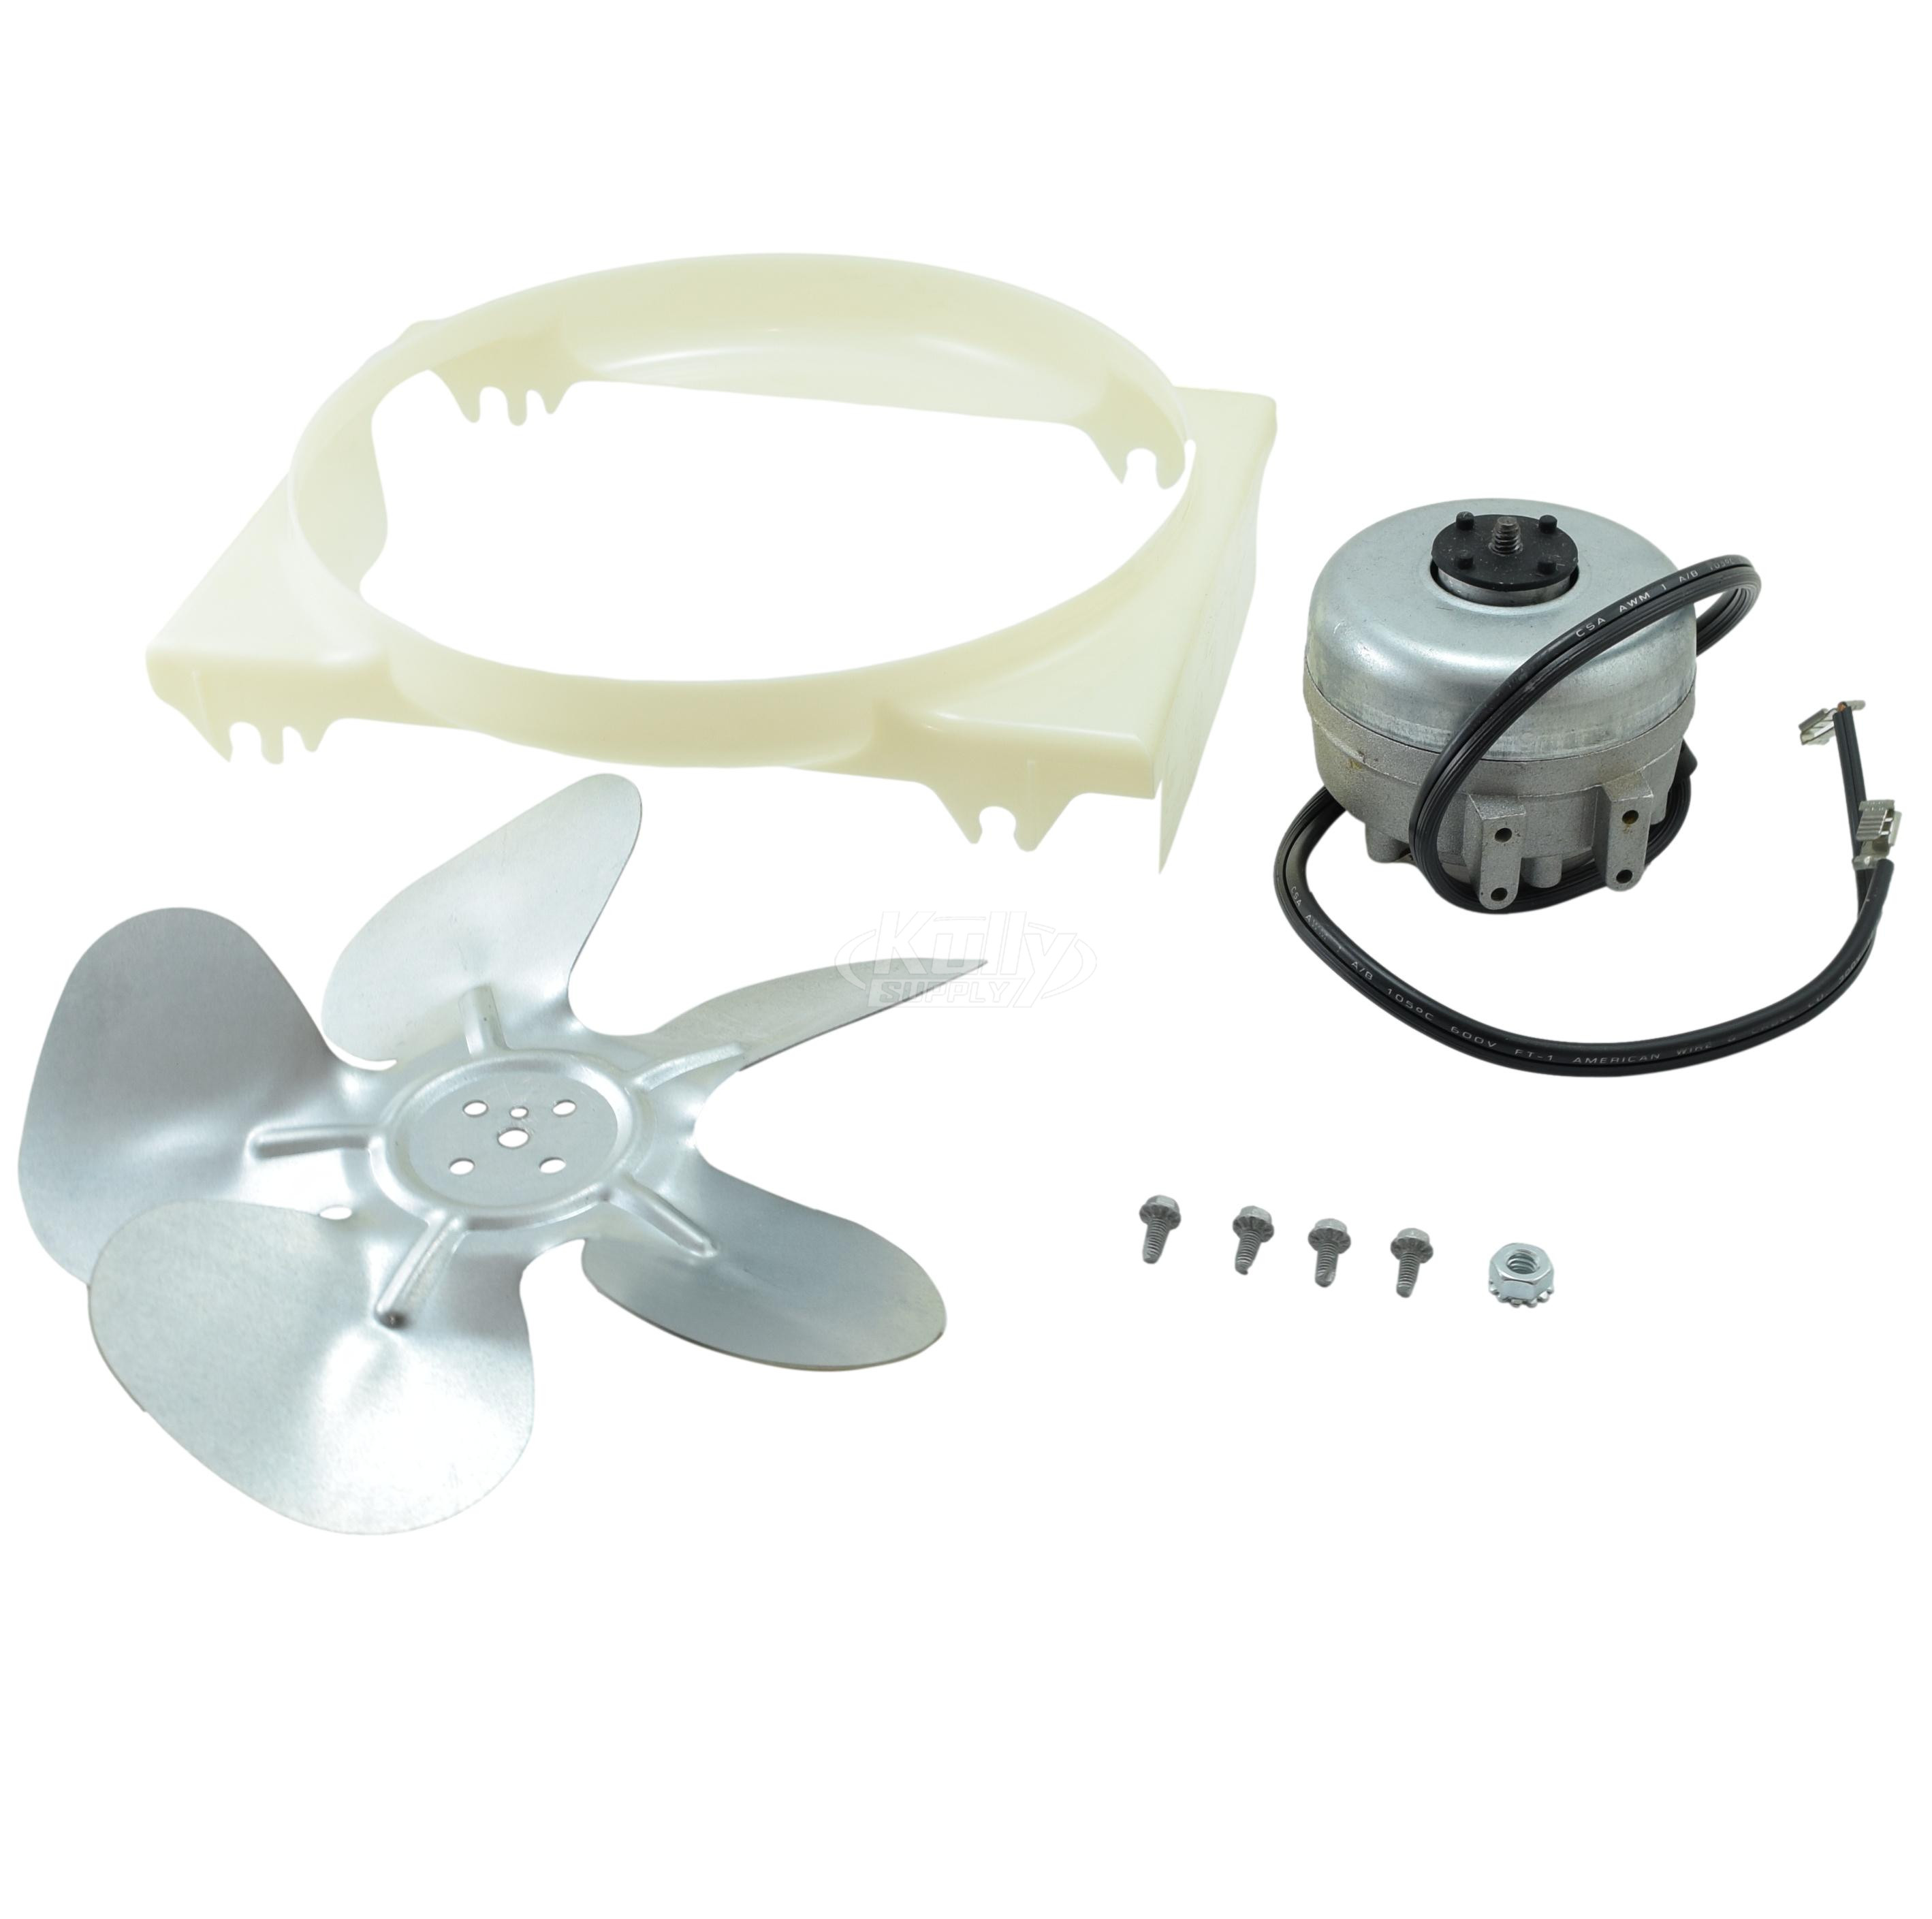 Elkay 0000000246 Fan Motor Assembly Kit